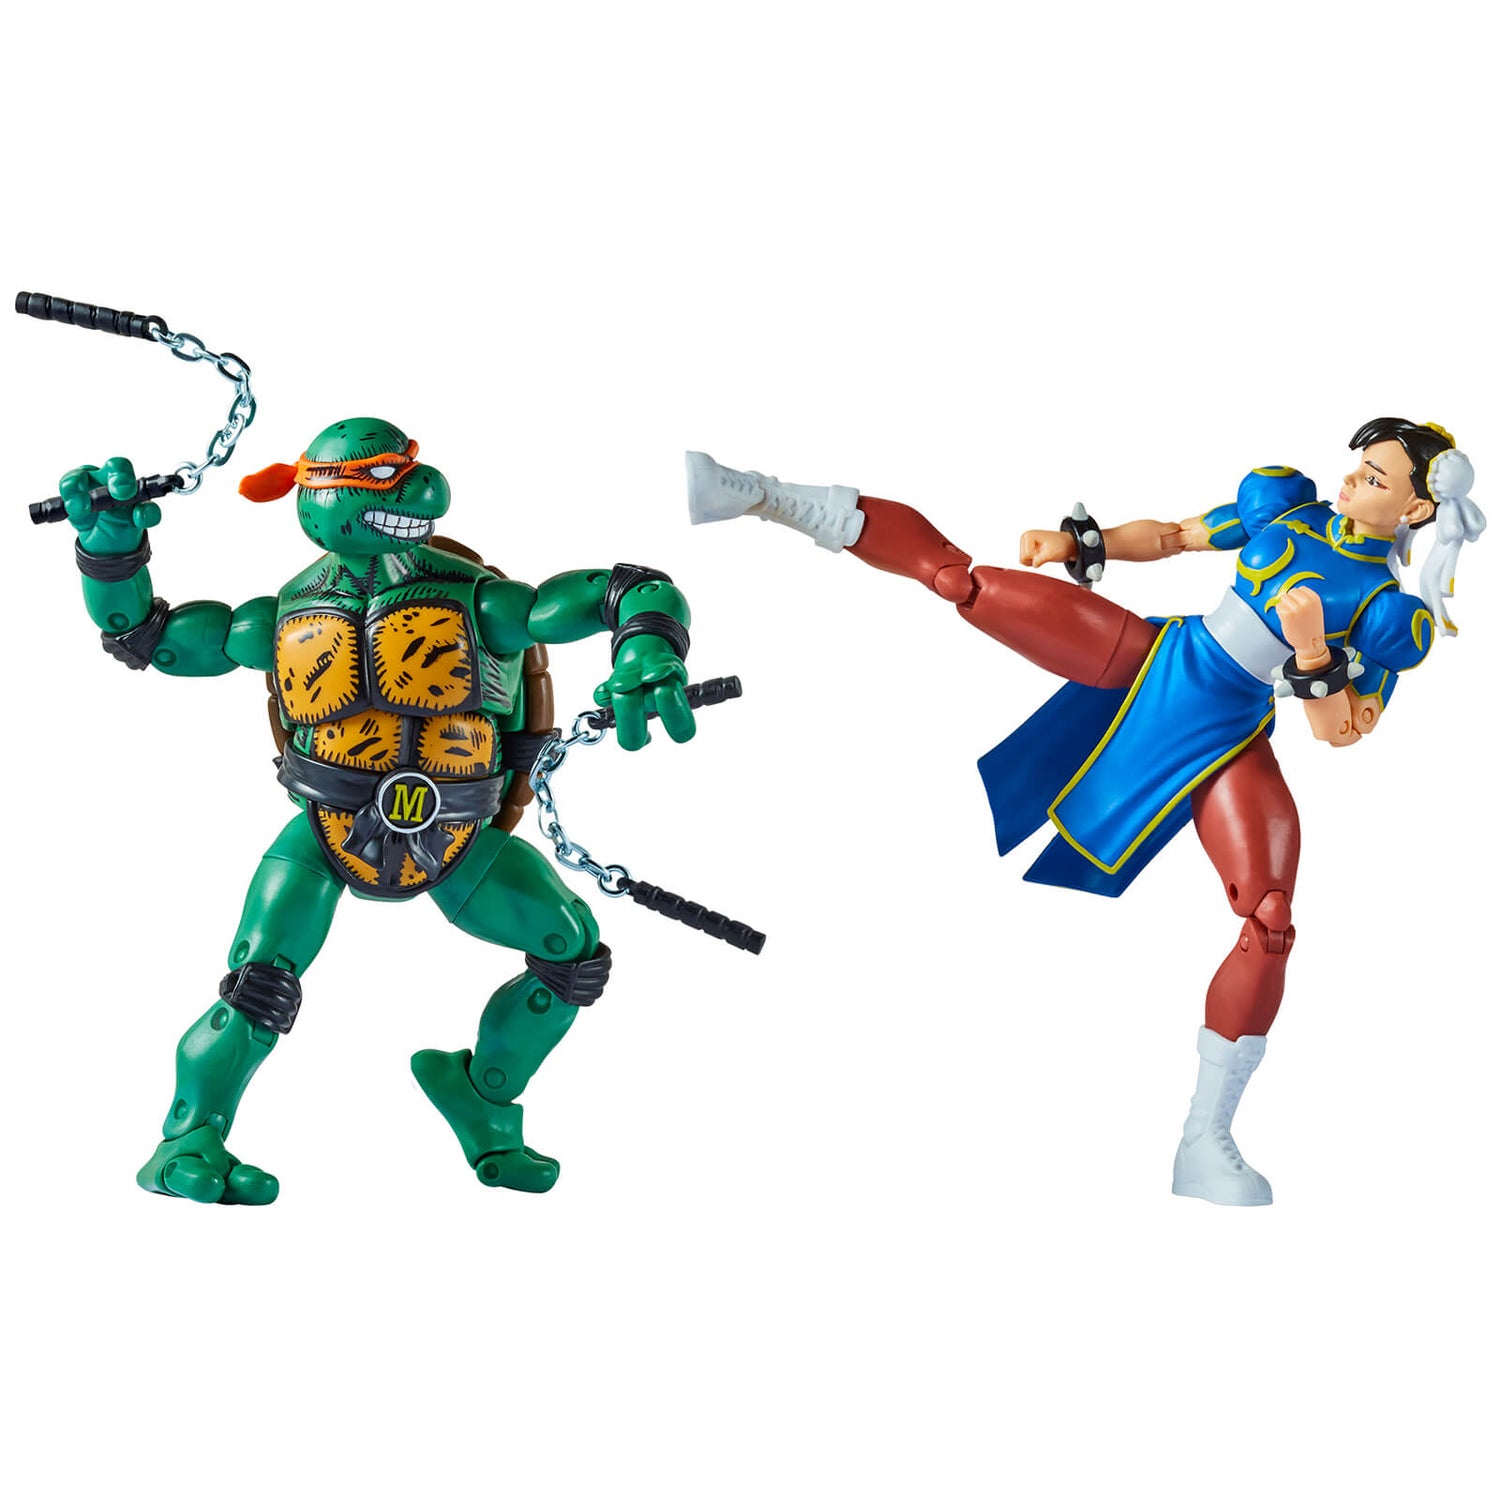 Playmates Teenage Mutant Ninja Turtles x Street Fighter Michaelangelo vs Chun Li Action Figure 2 Pack